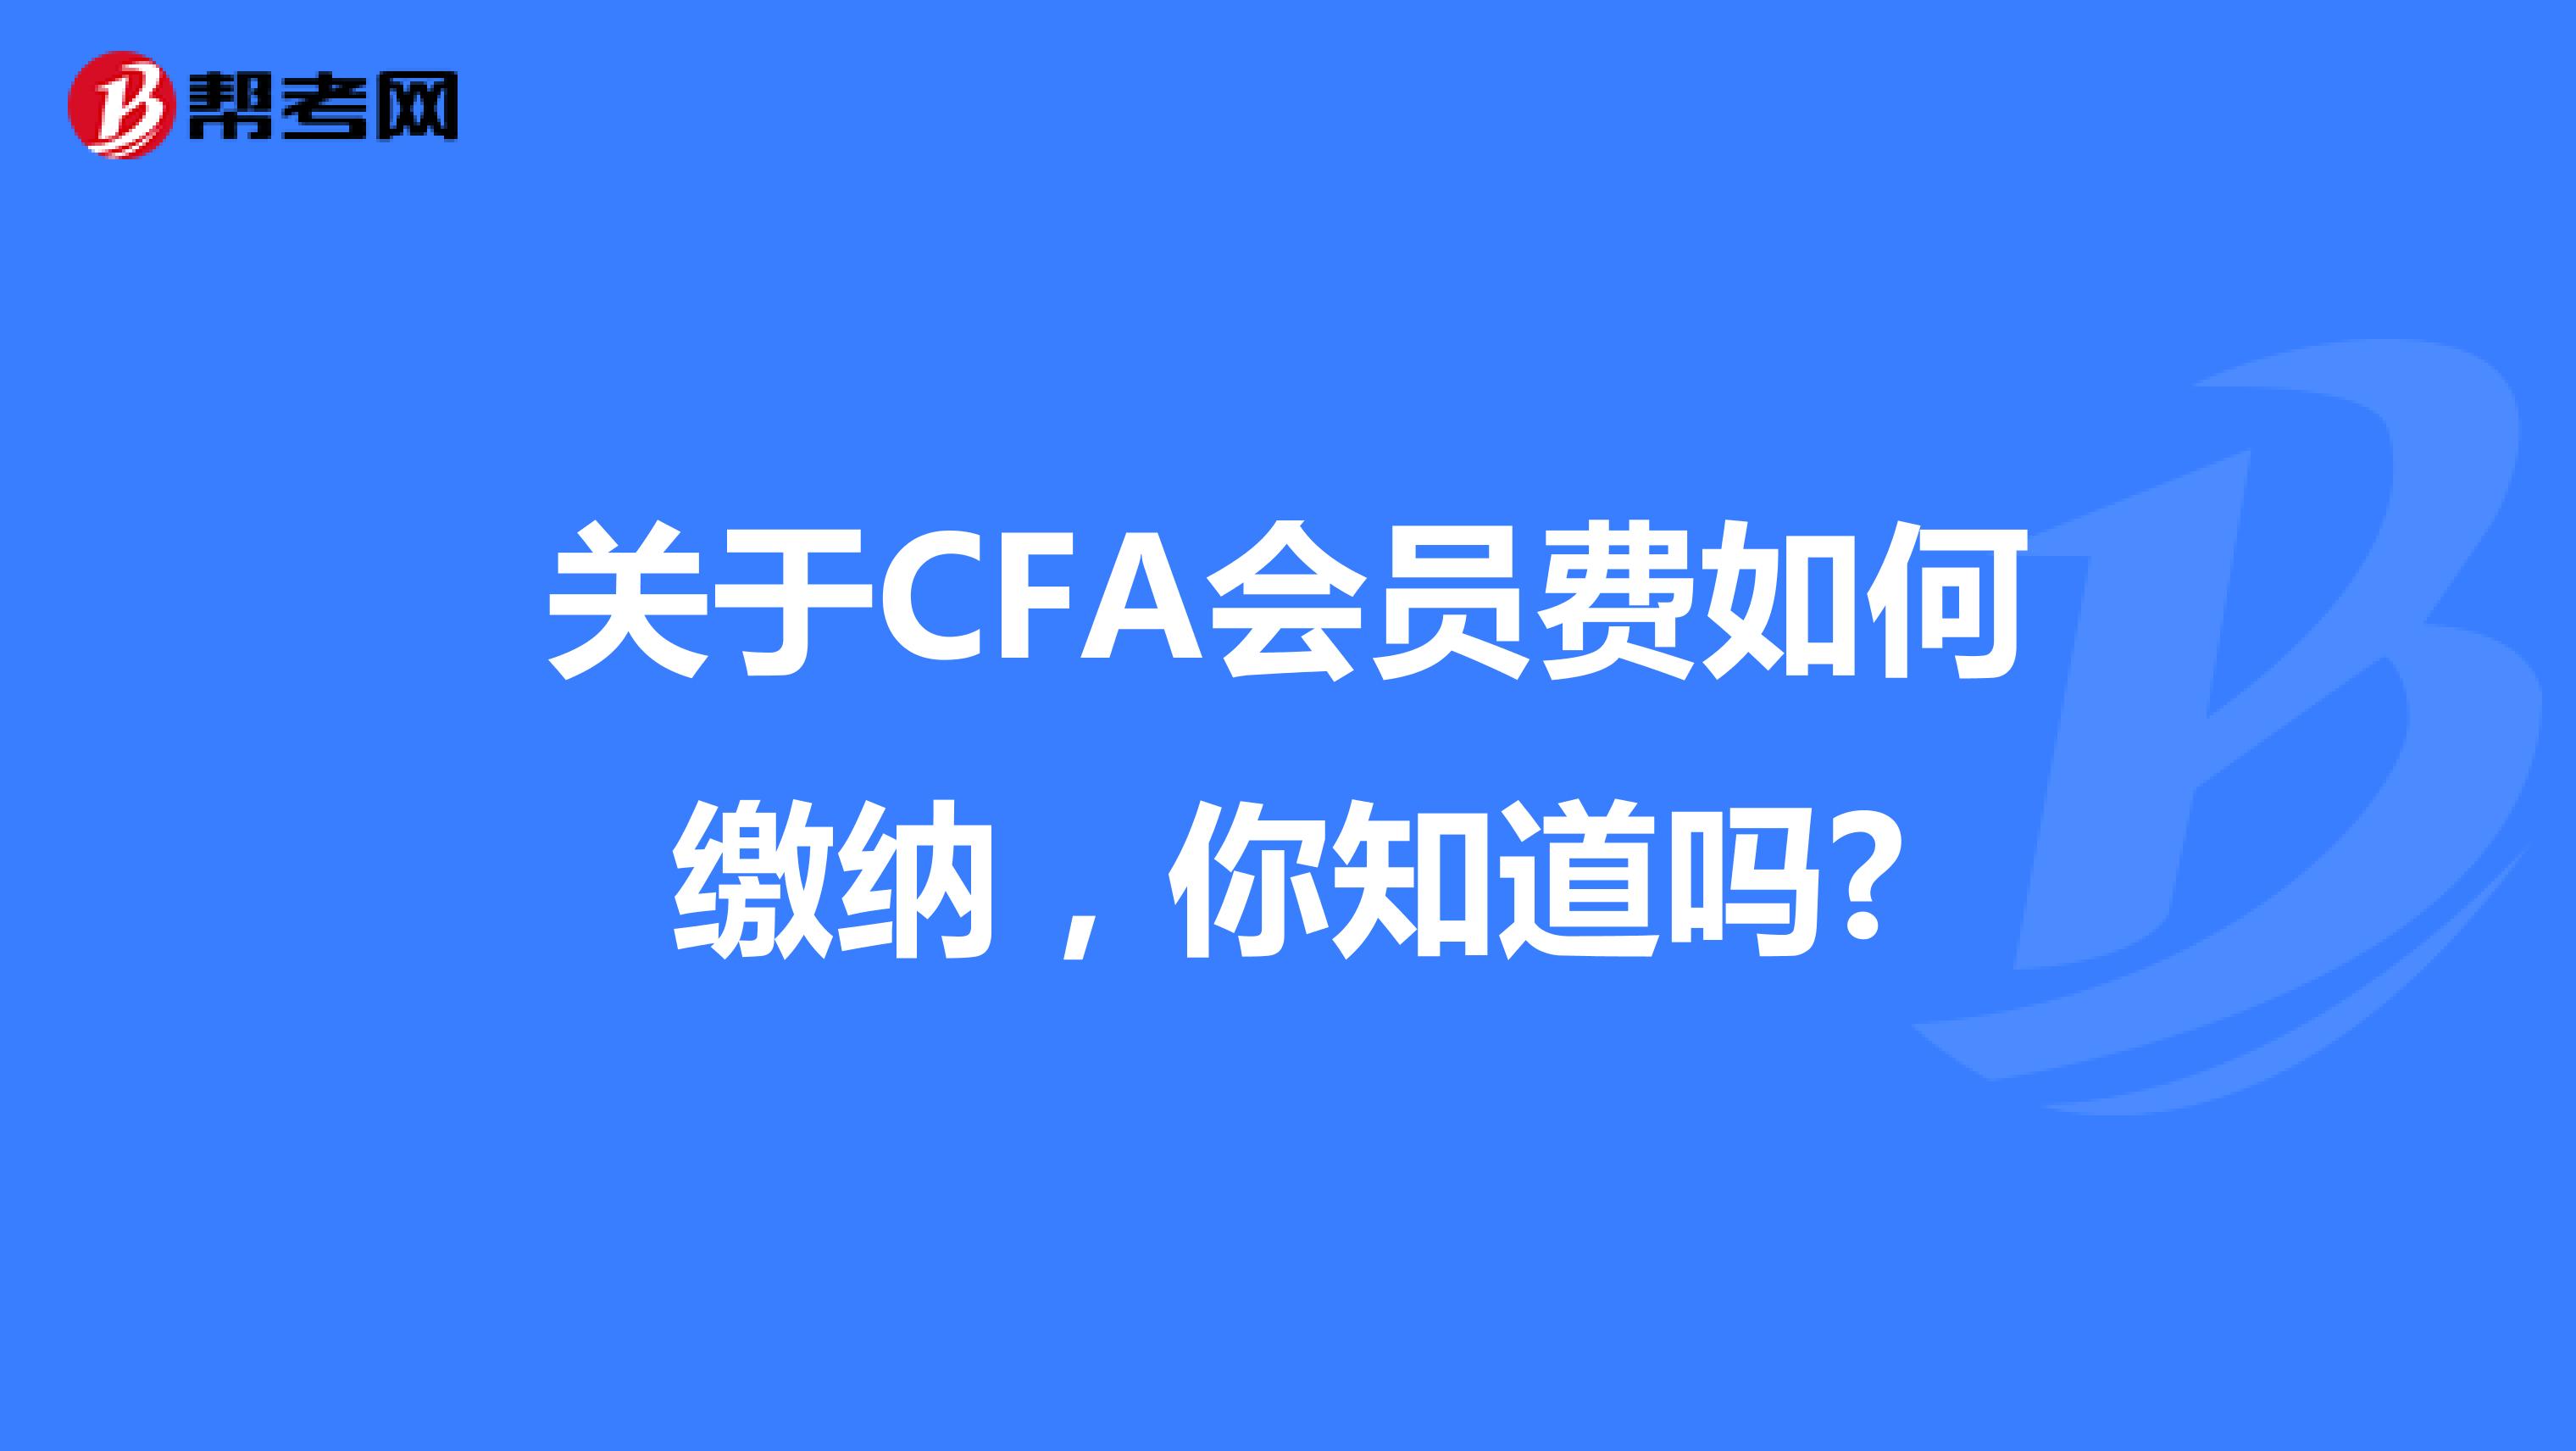 关于CFA会员费如何缴纳，你知道吗?